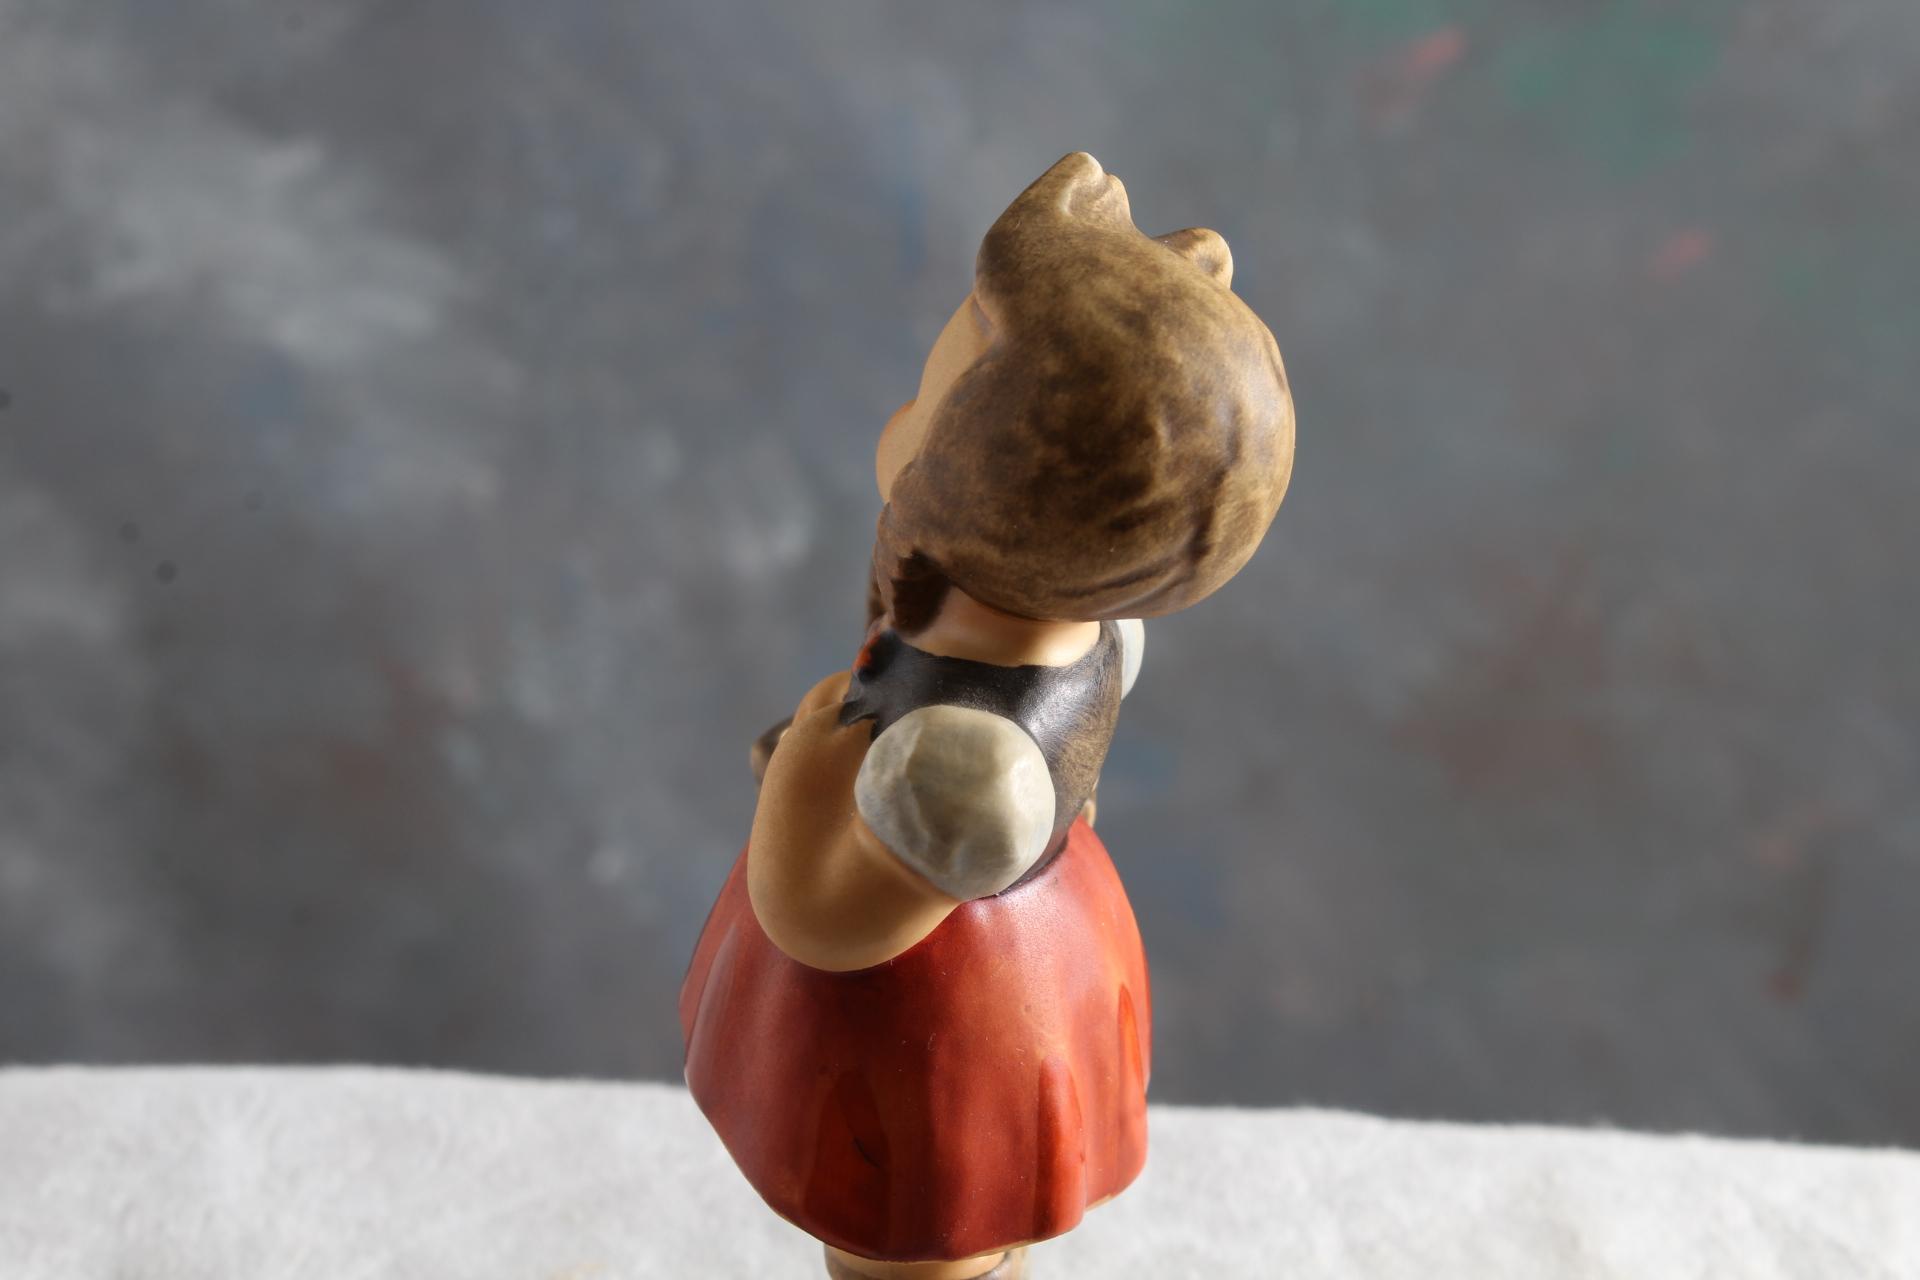 Vintage Hummel Goebel Figurine LITTLE SHOPPER #96 Measures 4.75" Tall